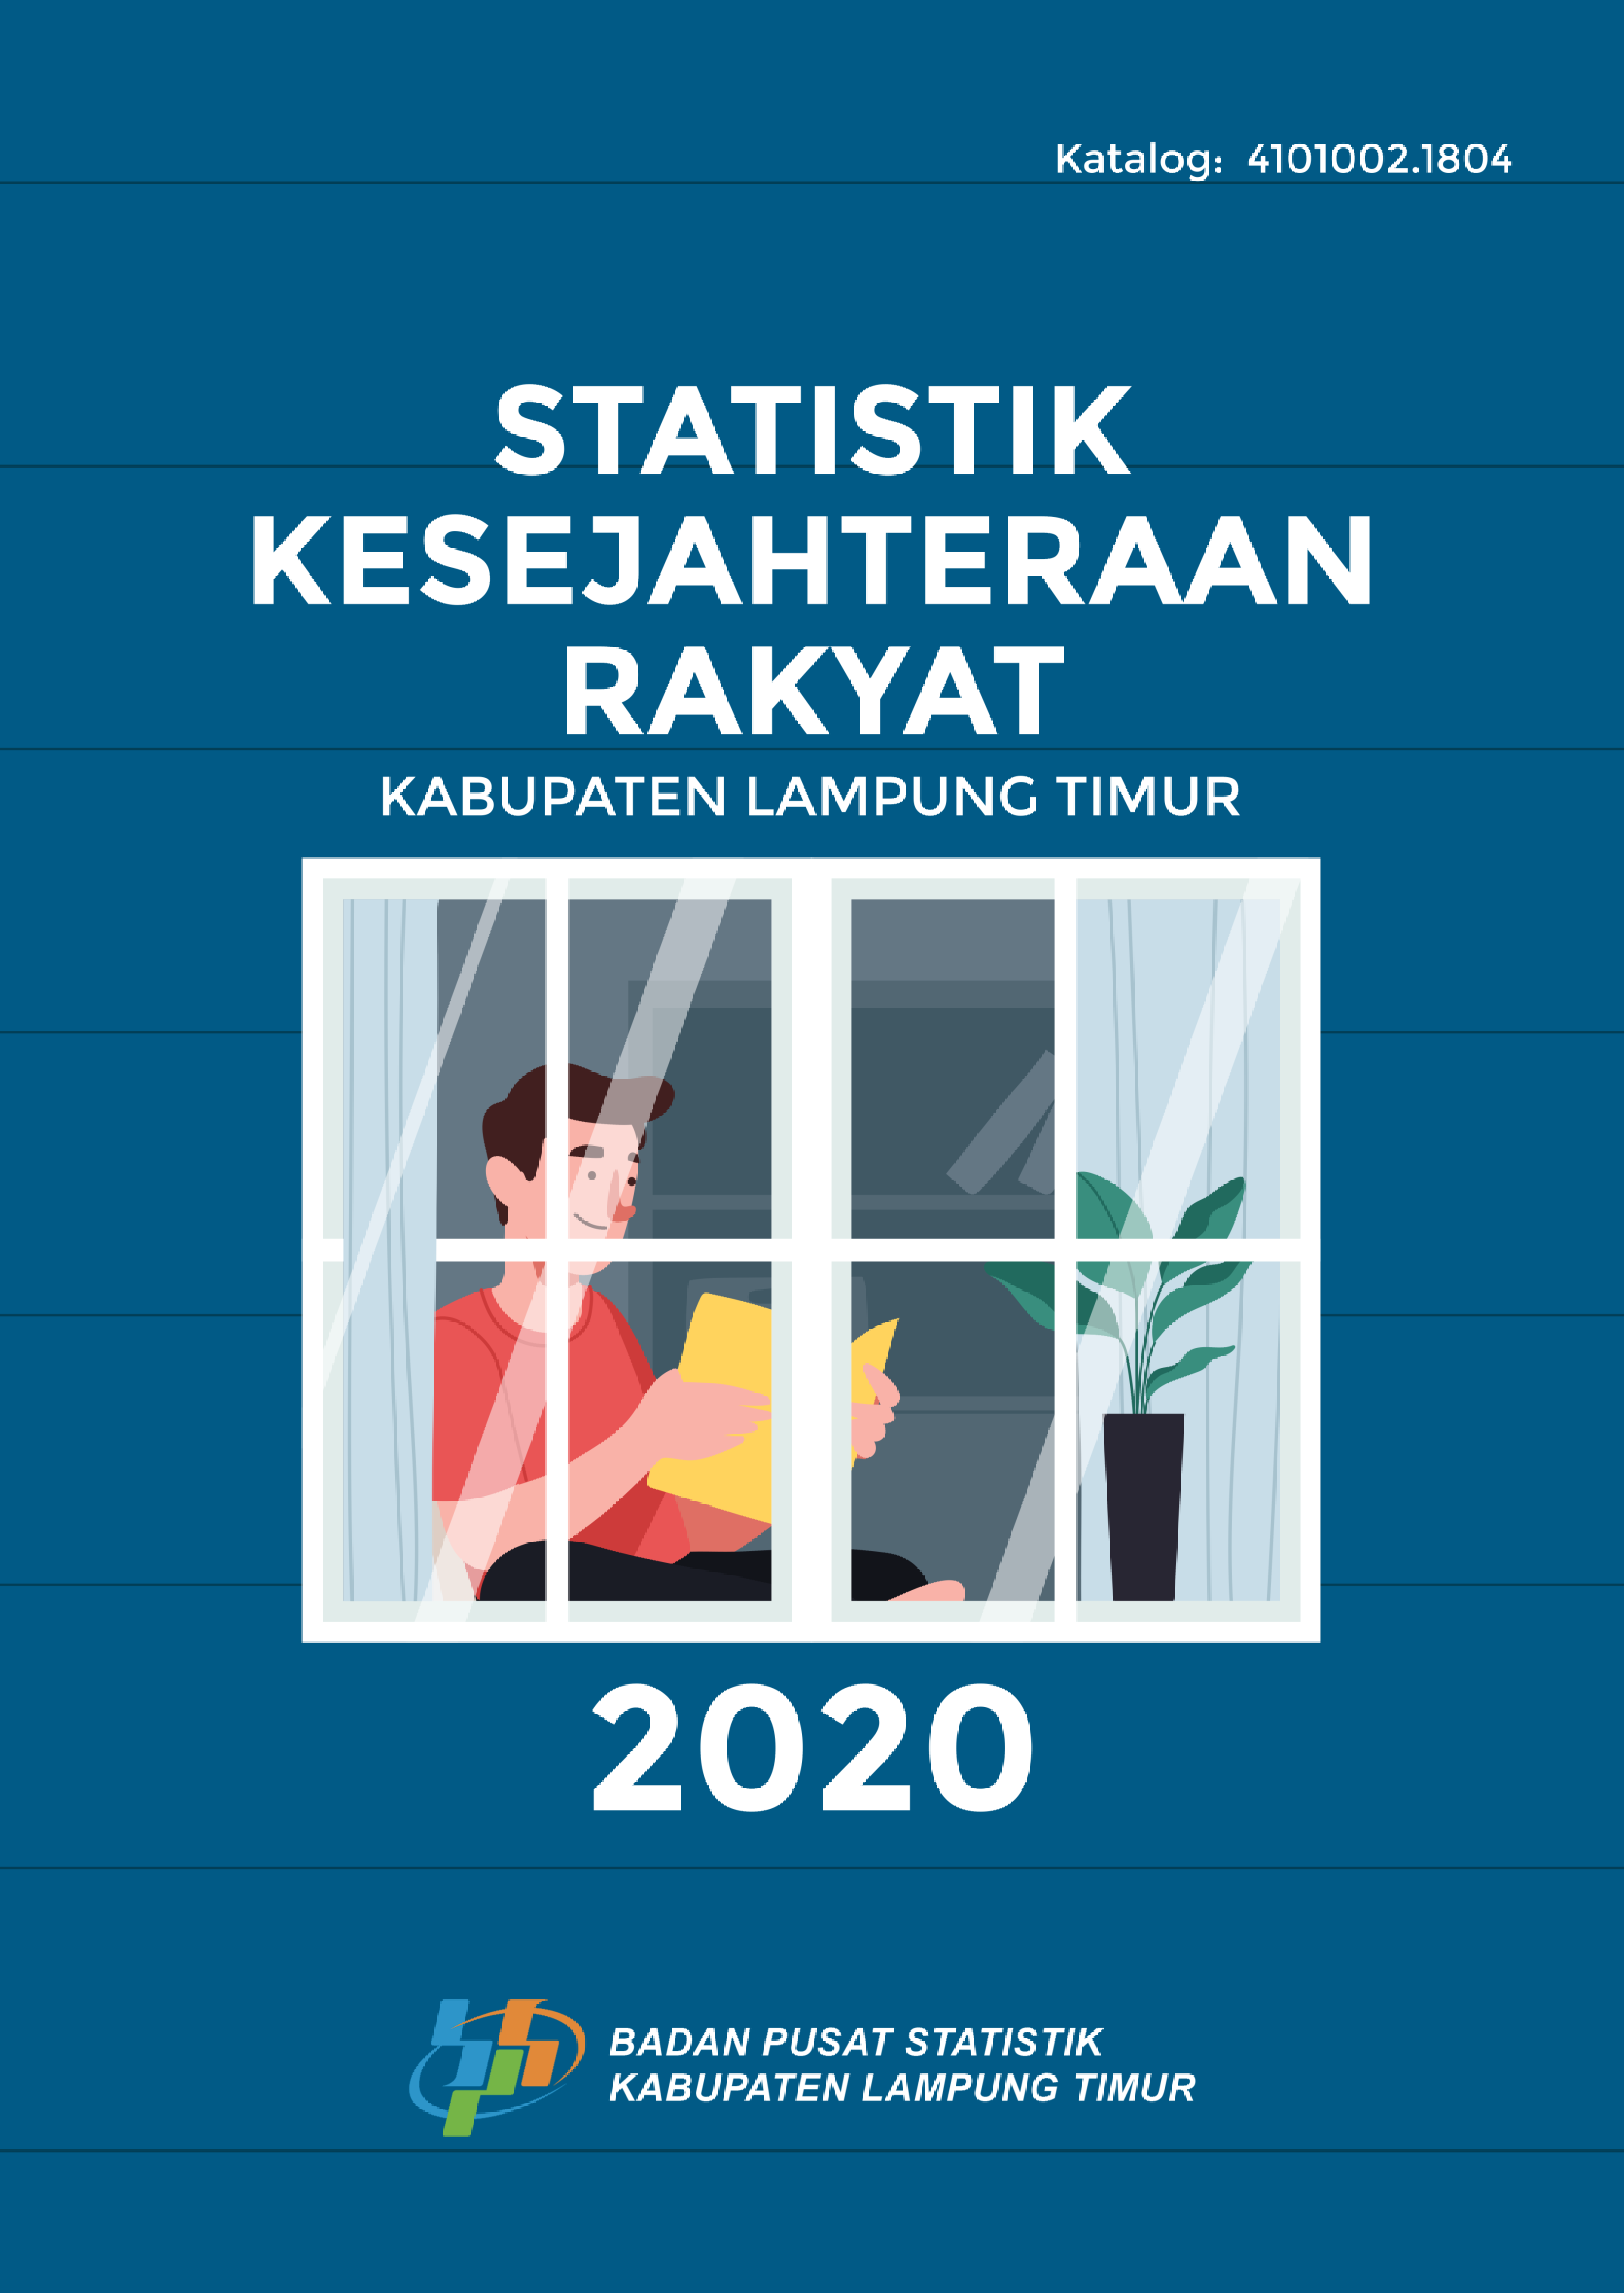 Statistik kesejahteraan rakyat Kabupaten Lampung Timur 2020 [sumber elektronis]